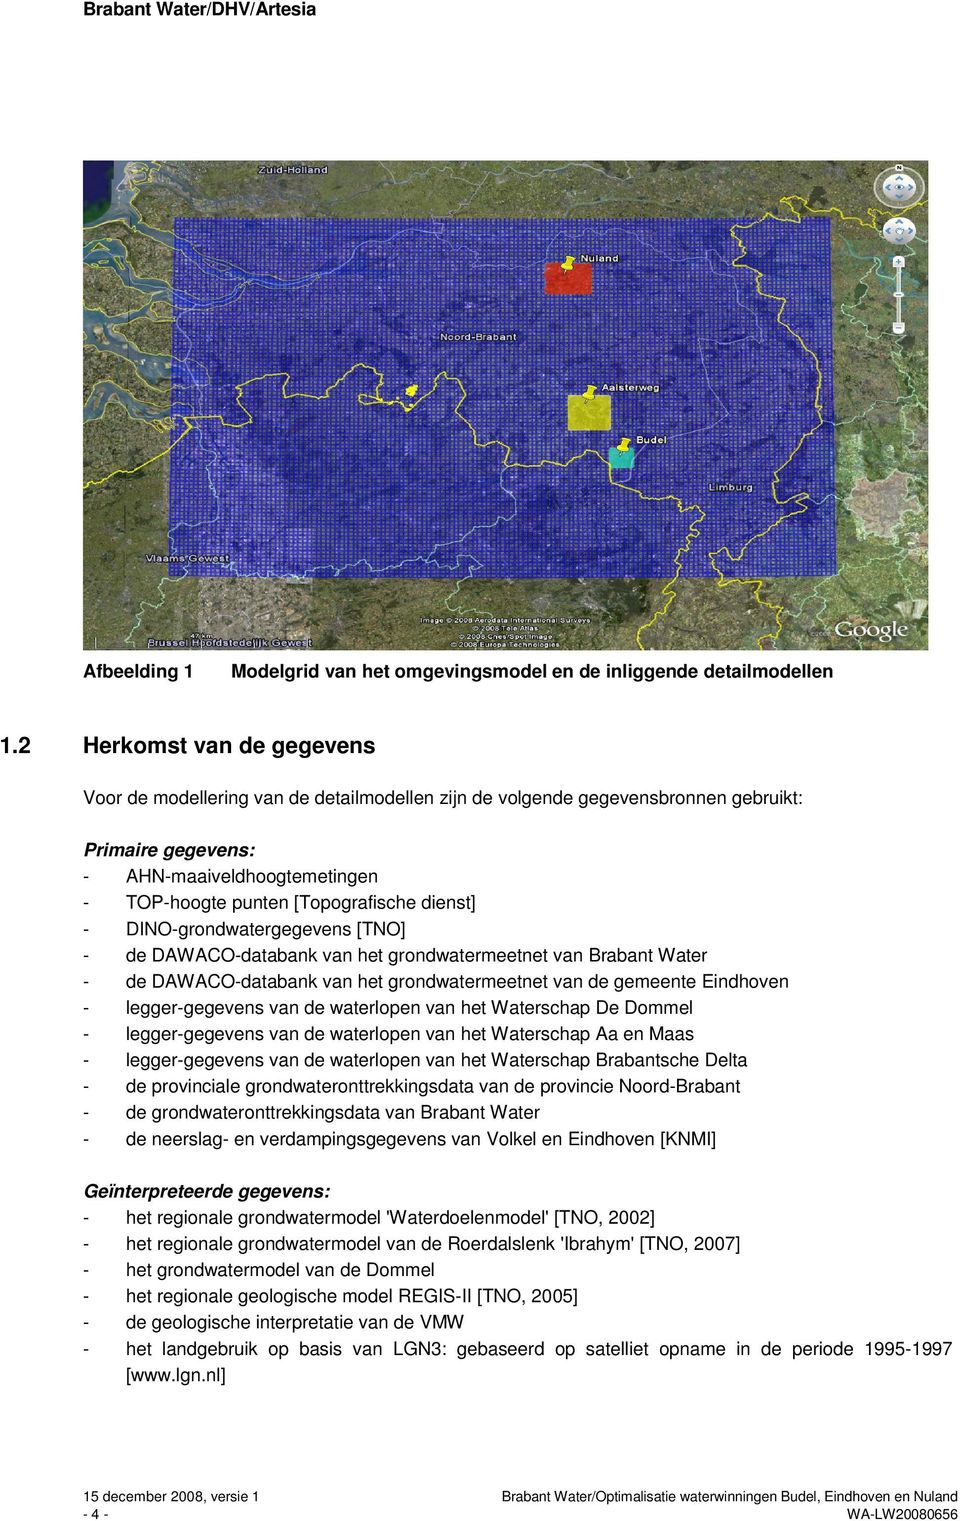 dienst] - DINO-grondwatergegevens [TNO] - de DAWACO-databank van het grondwatermeetnet van Brabant Water - de DAWACO-databank van het grondwatermeetnet van de gemeente Eindhoven - legger-gegevens van